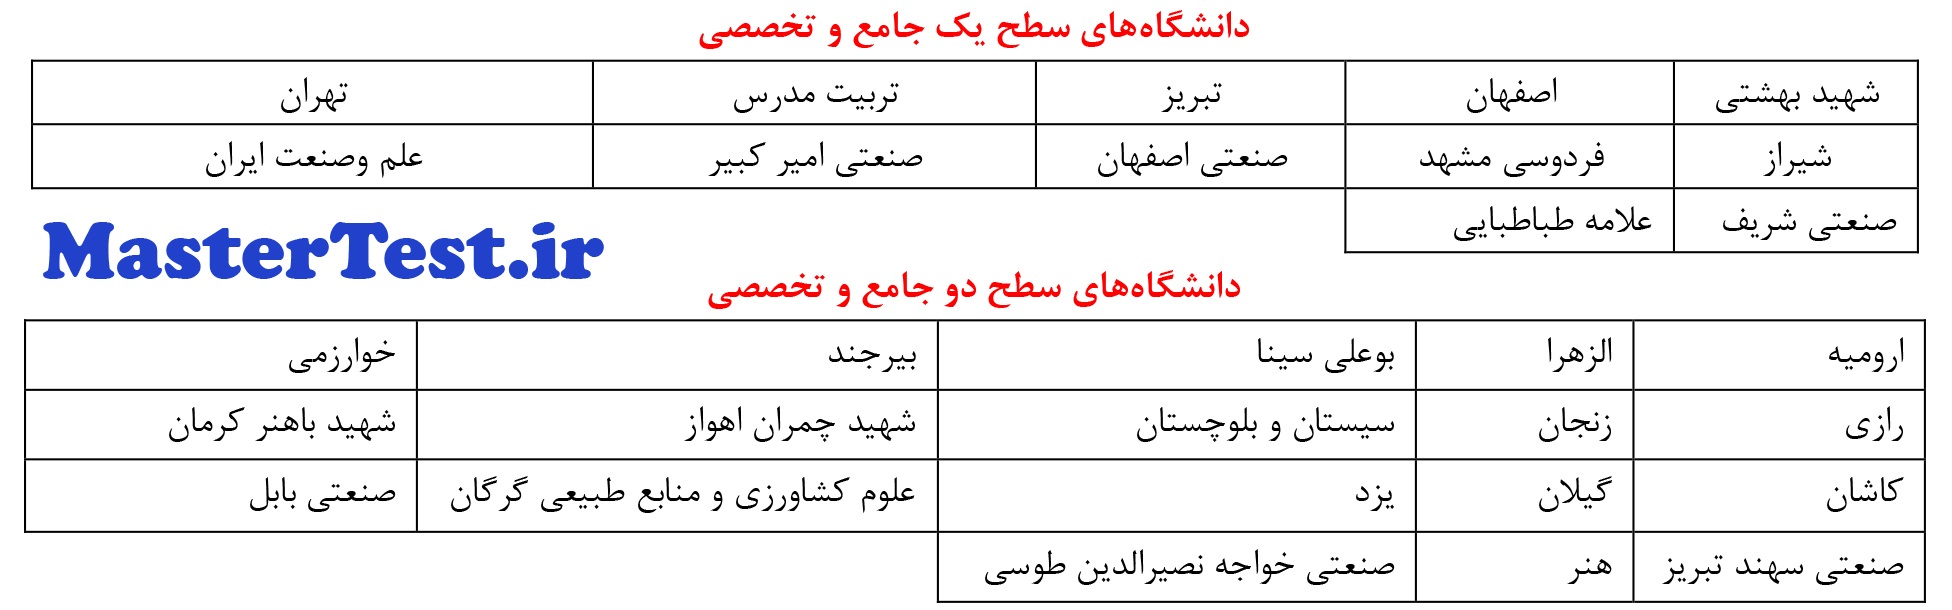 ارشد بدون کنکور 97 - 98 دانشگاه شهید بهشتی